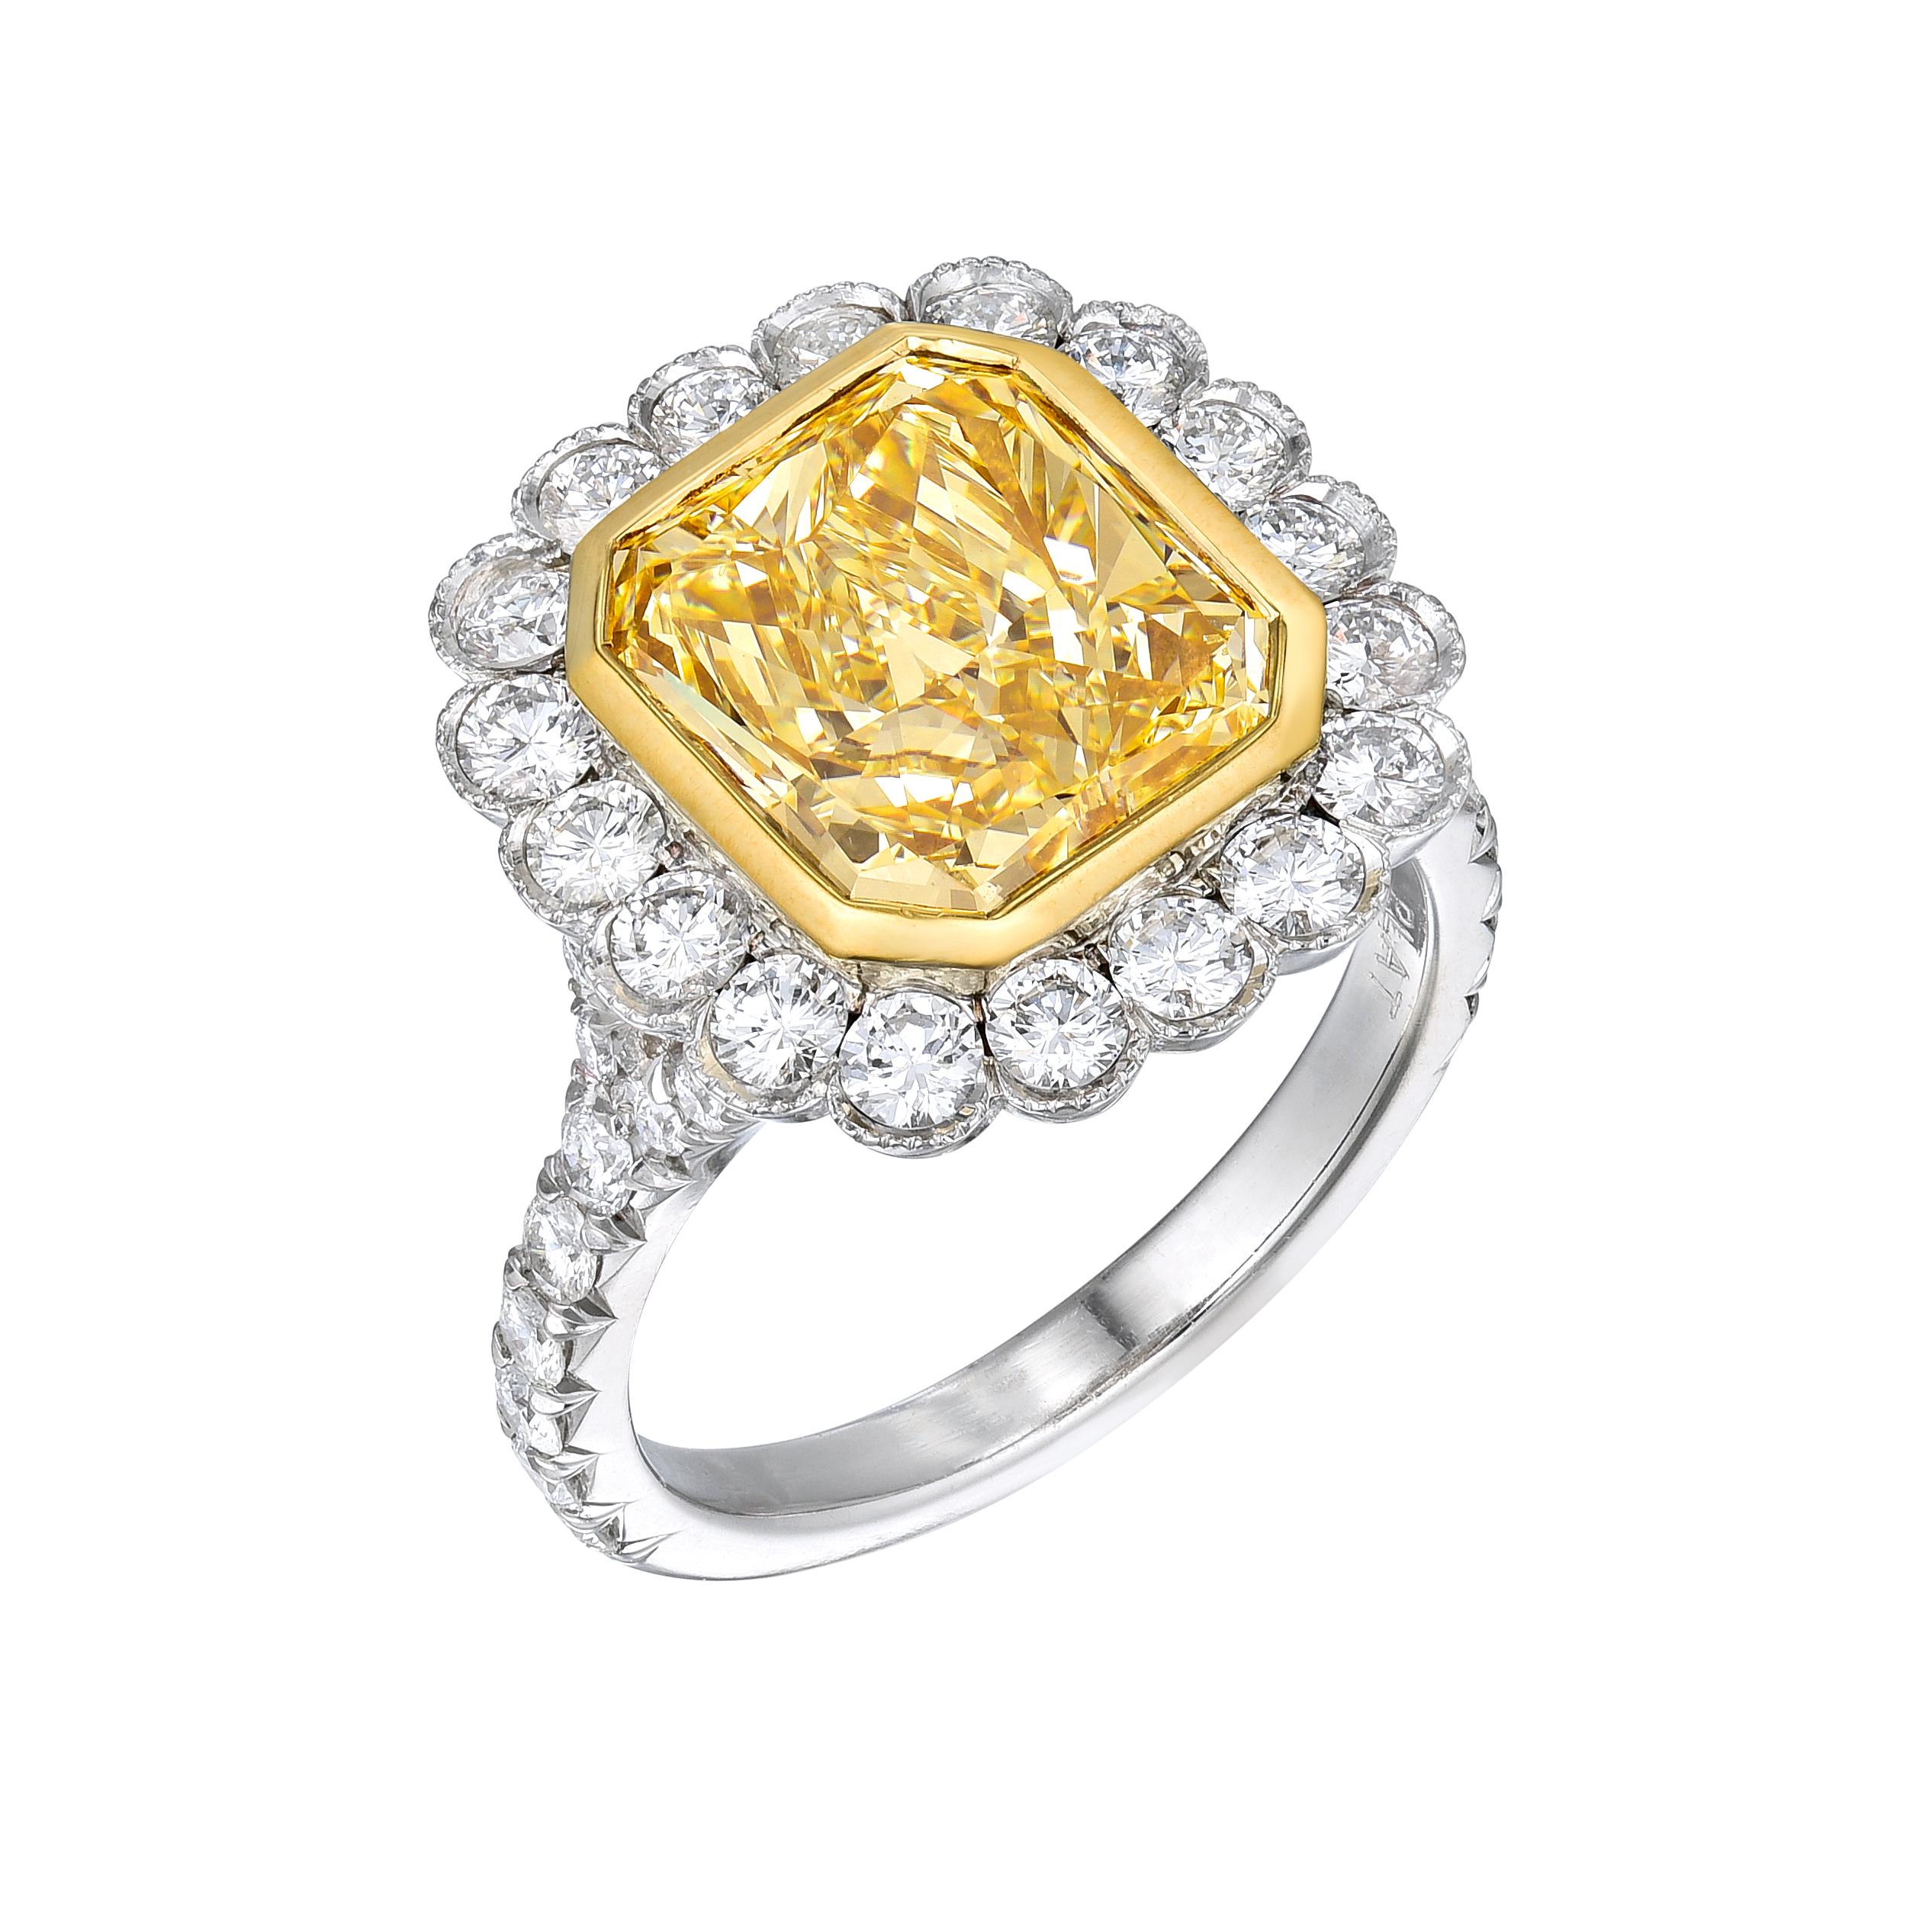 Diamant-Platinring mit GIA-Zertifikat, Nr. 1162532915. Mittelstein: 4,02ct Diamant im Radiant-Schliff Fancy Yellow, 10,2 x 9,1 x 5,0 mm. Seitliche Steine: 1,00ct Brillante runde Diamanten: F-G VS1-SI1. Karatgewicht insgesamt: 5,02ct. EGL-Bericht Nr.